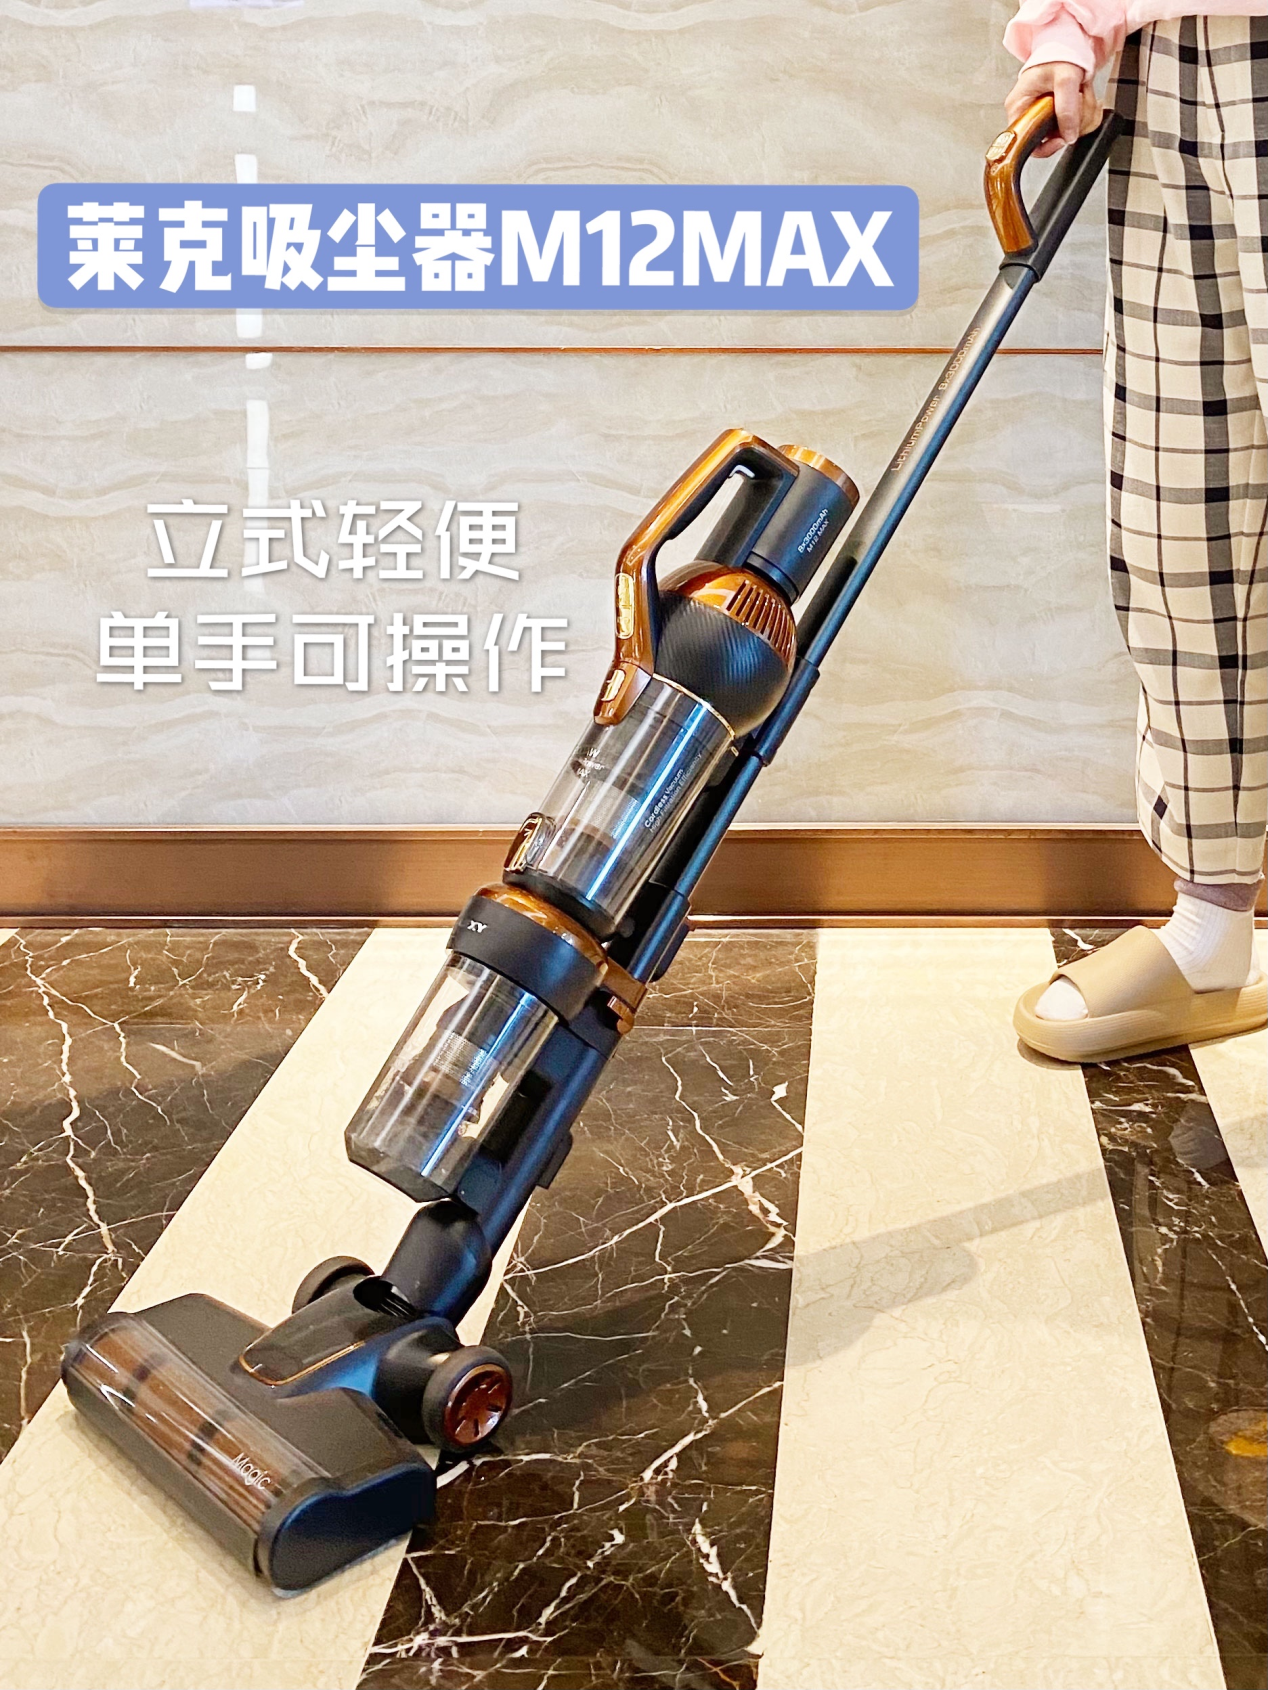 轻松吸走家务烦恼莱克M12 MAX吸尘器助您清洁无忧(图3)